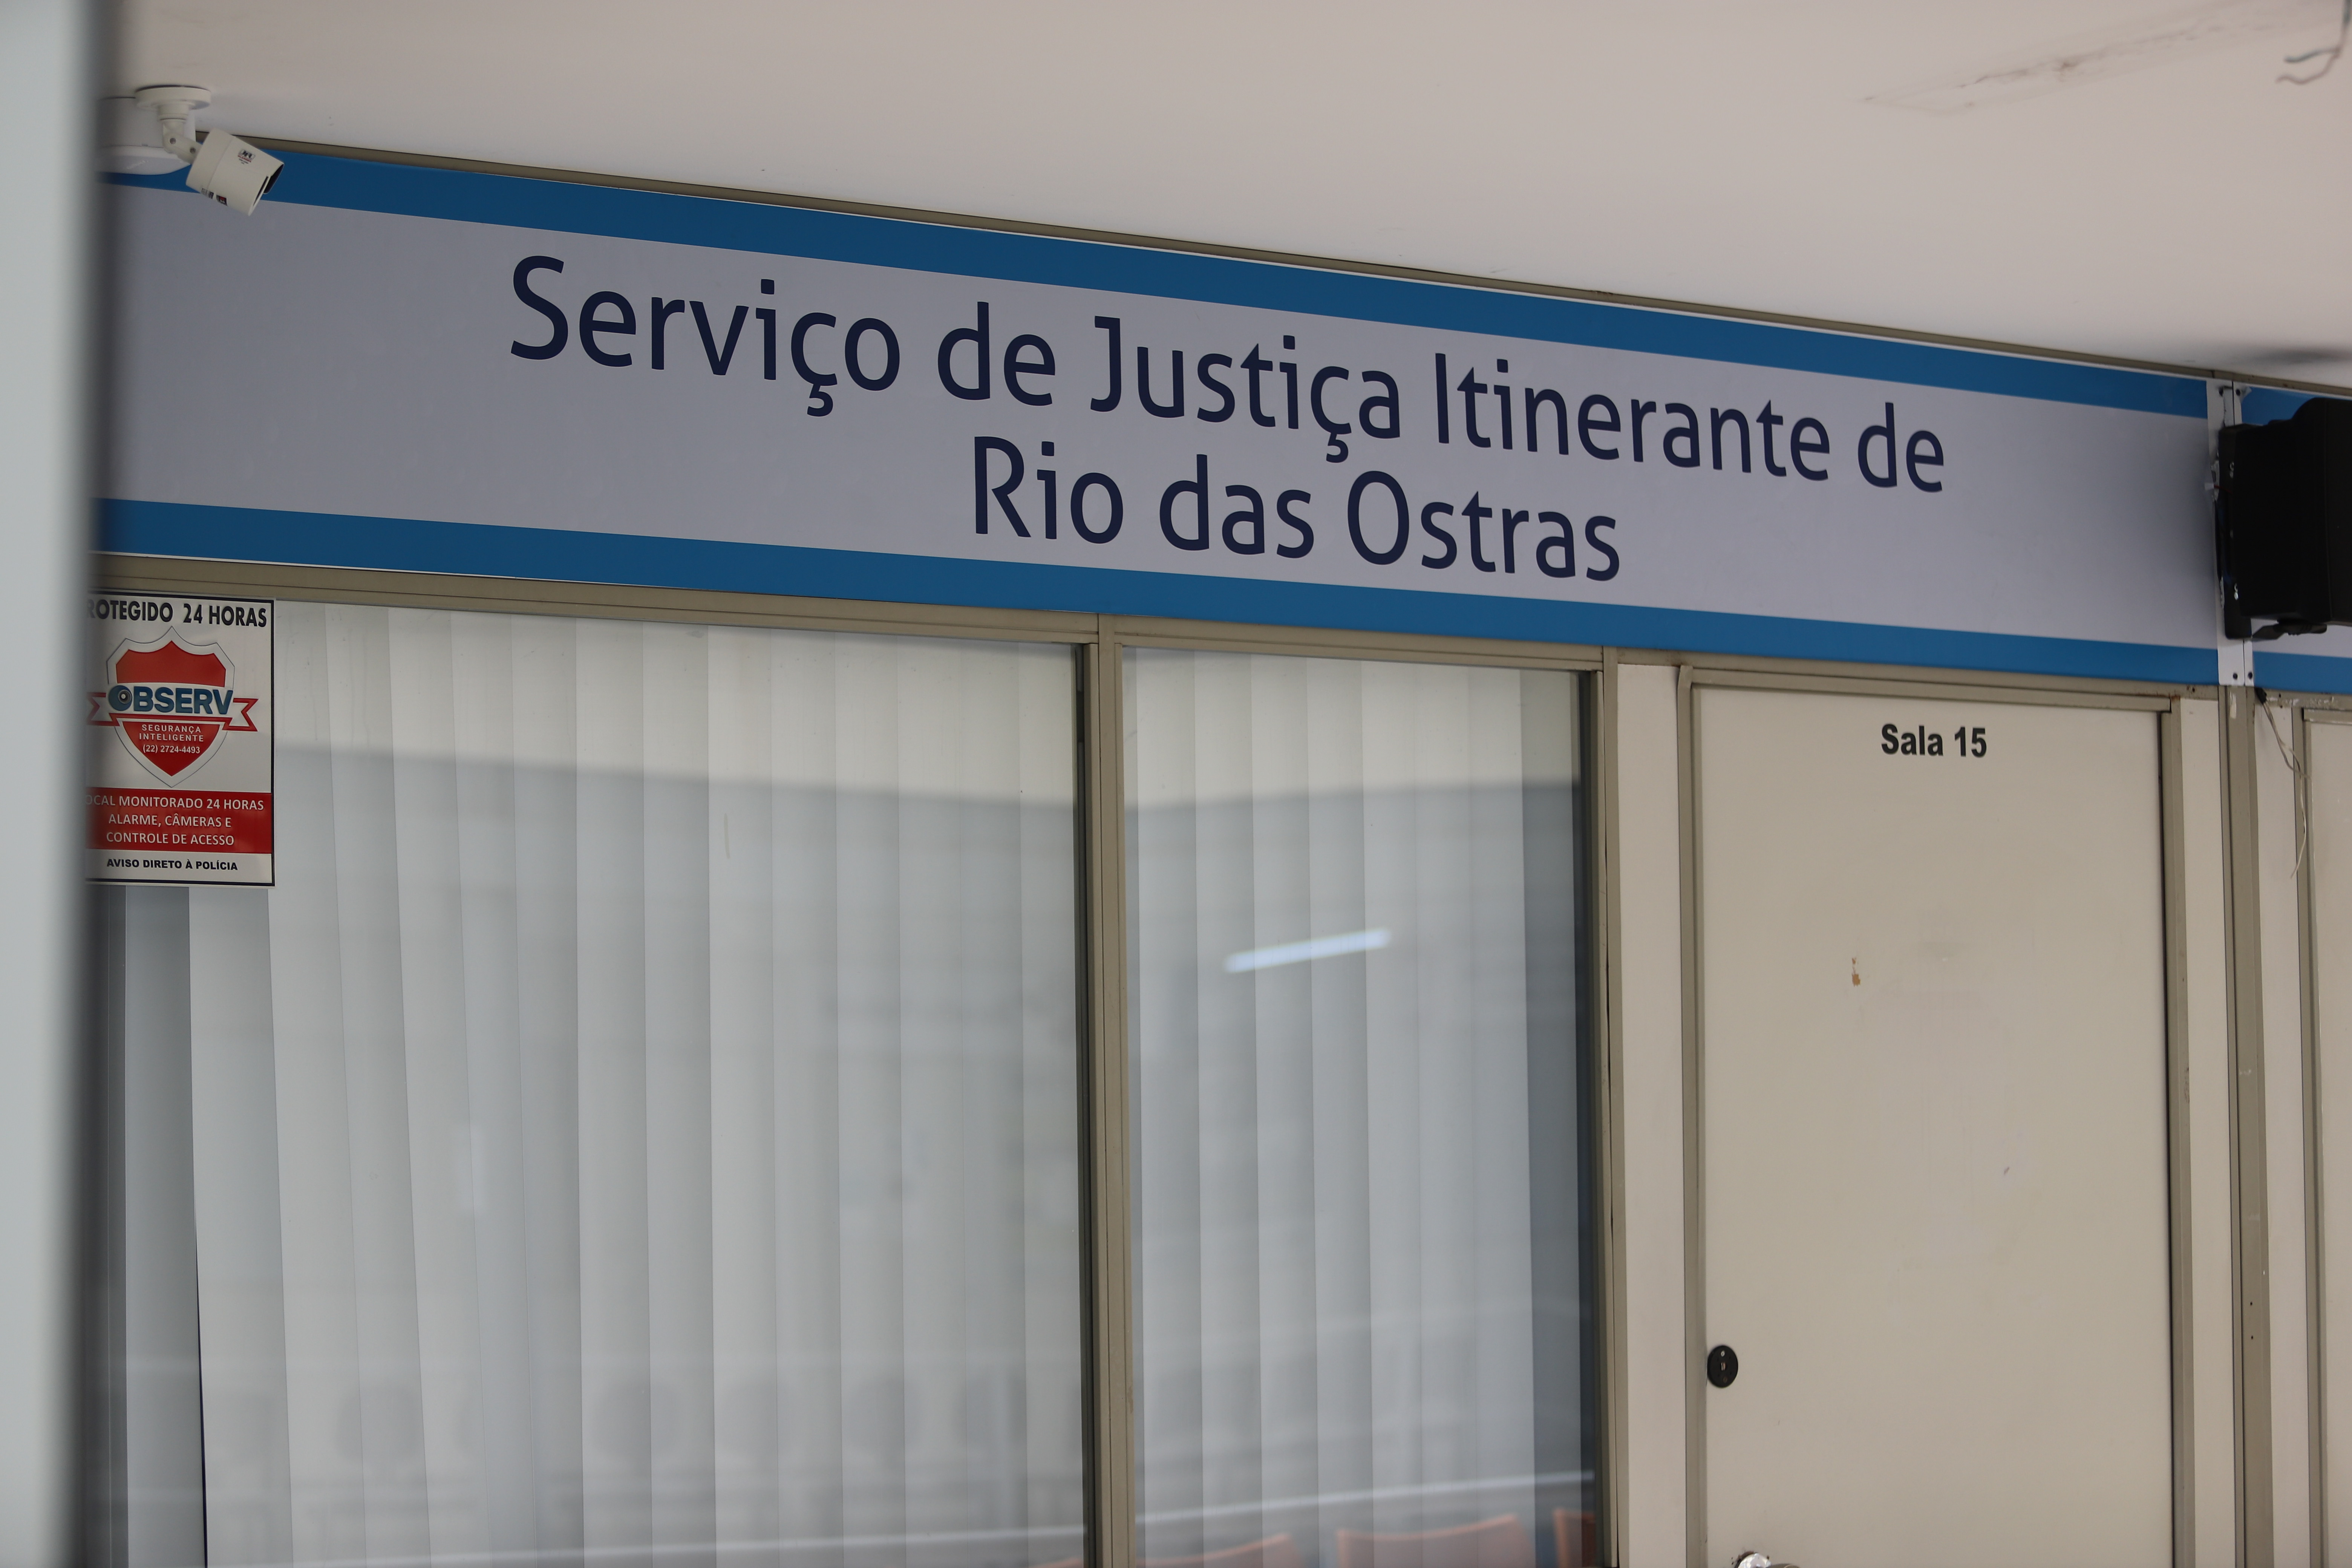 Nova sede do Serviço de Justiça Itinerante será inaugurada nesta quarta em Rio das Ostras